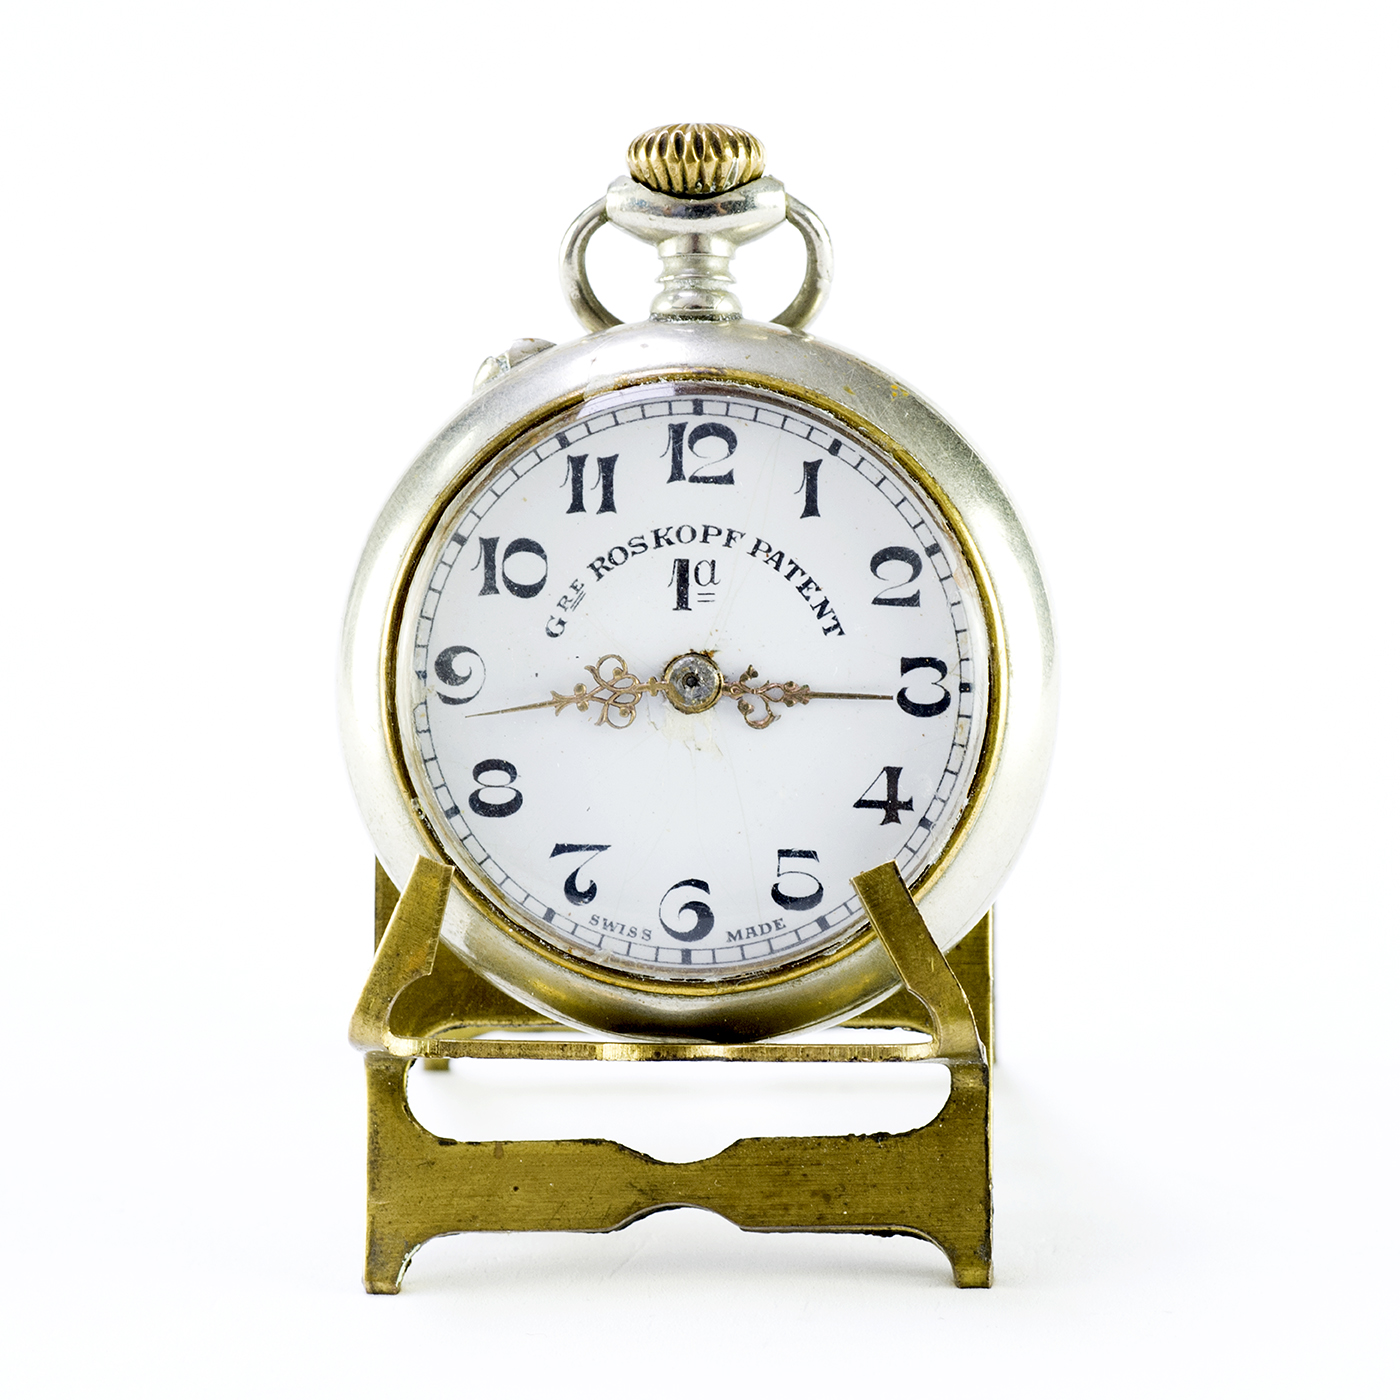 GRE ROSKOPF PATENT 1ª. Reloj de bolsillo, lepine remontoir. Suiza, ca.1900 Subastas Fígaro